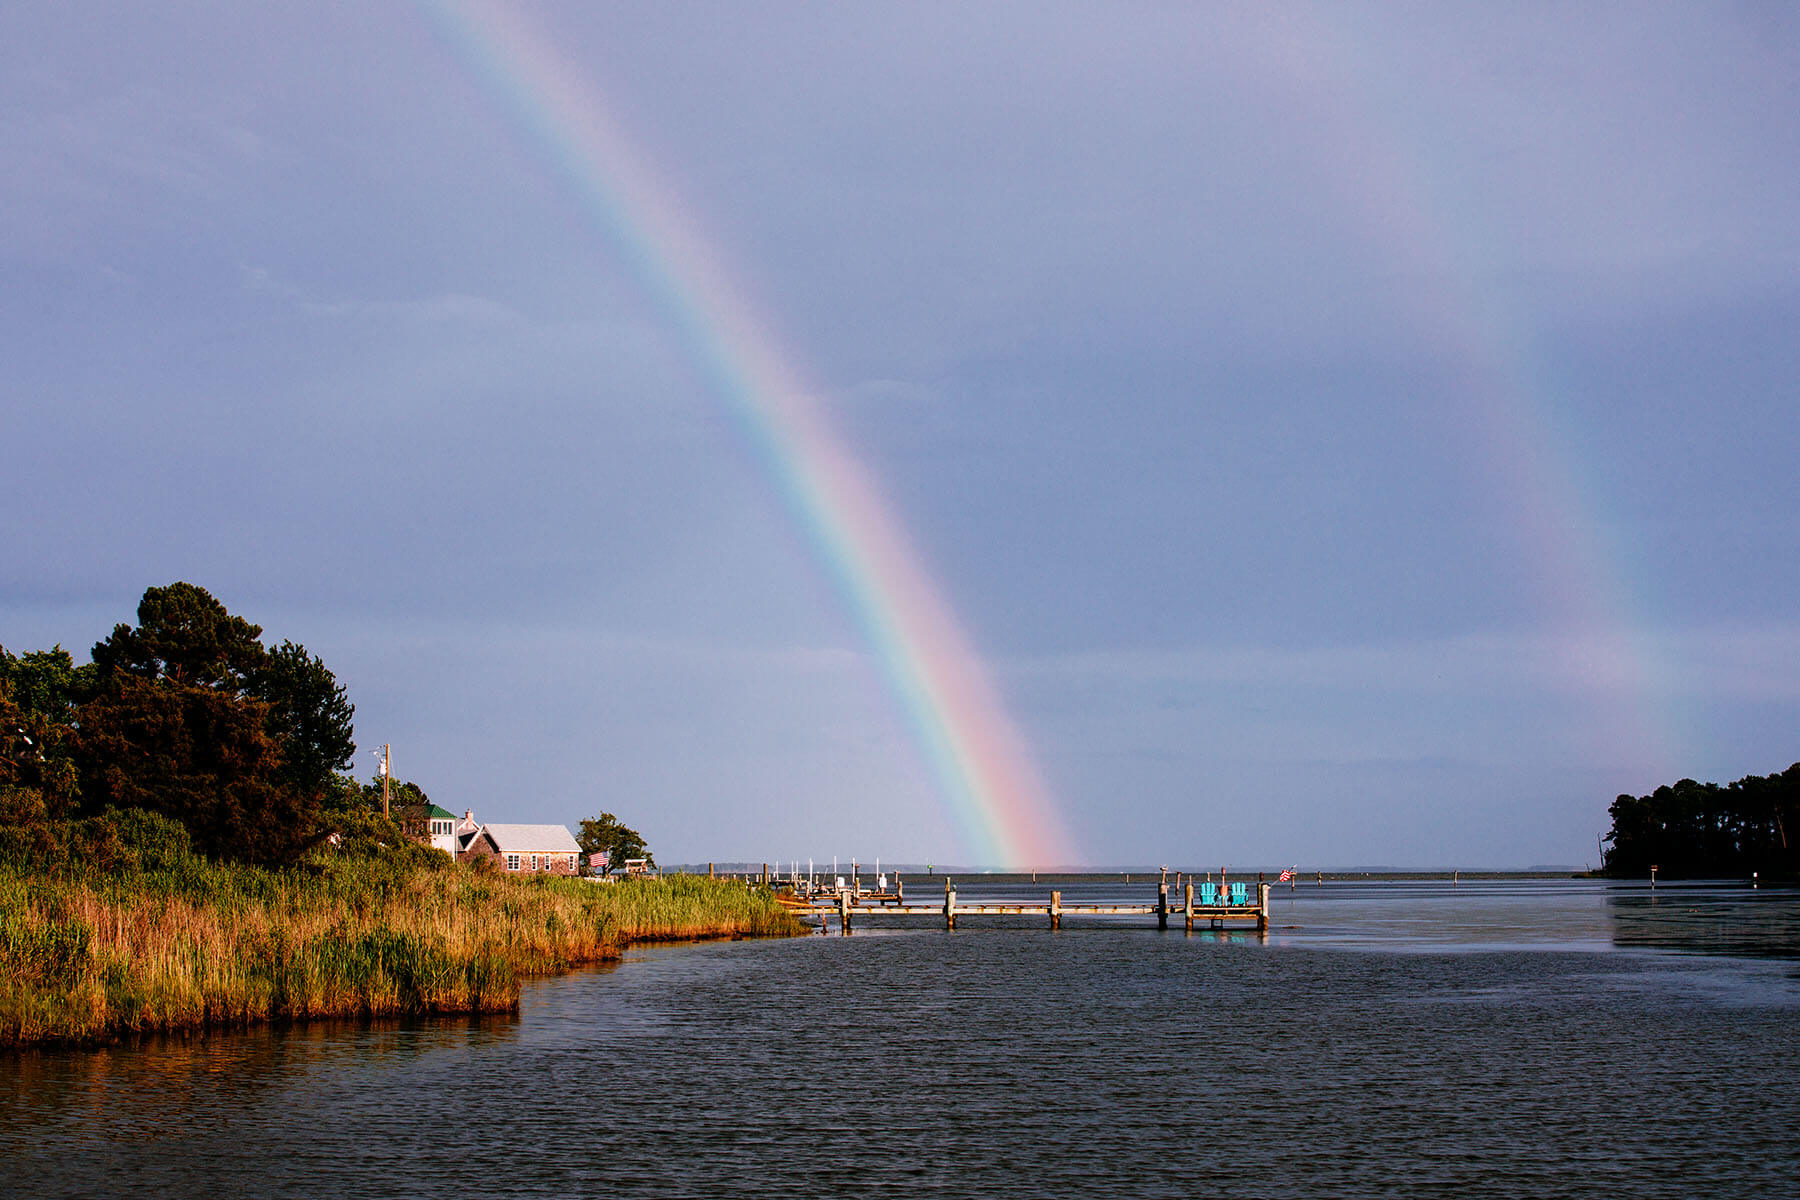 A double rainbow shows over Tilghman Island.